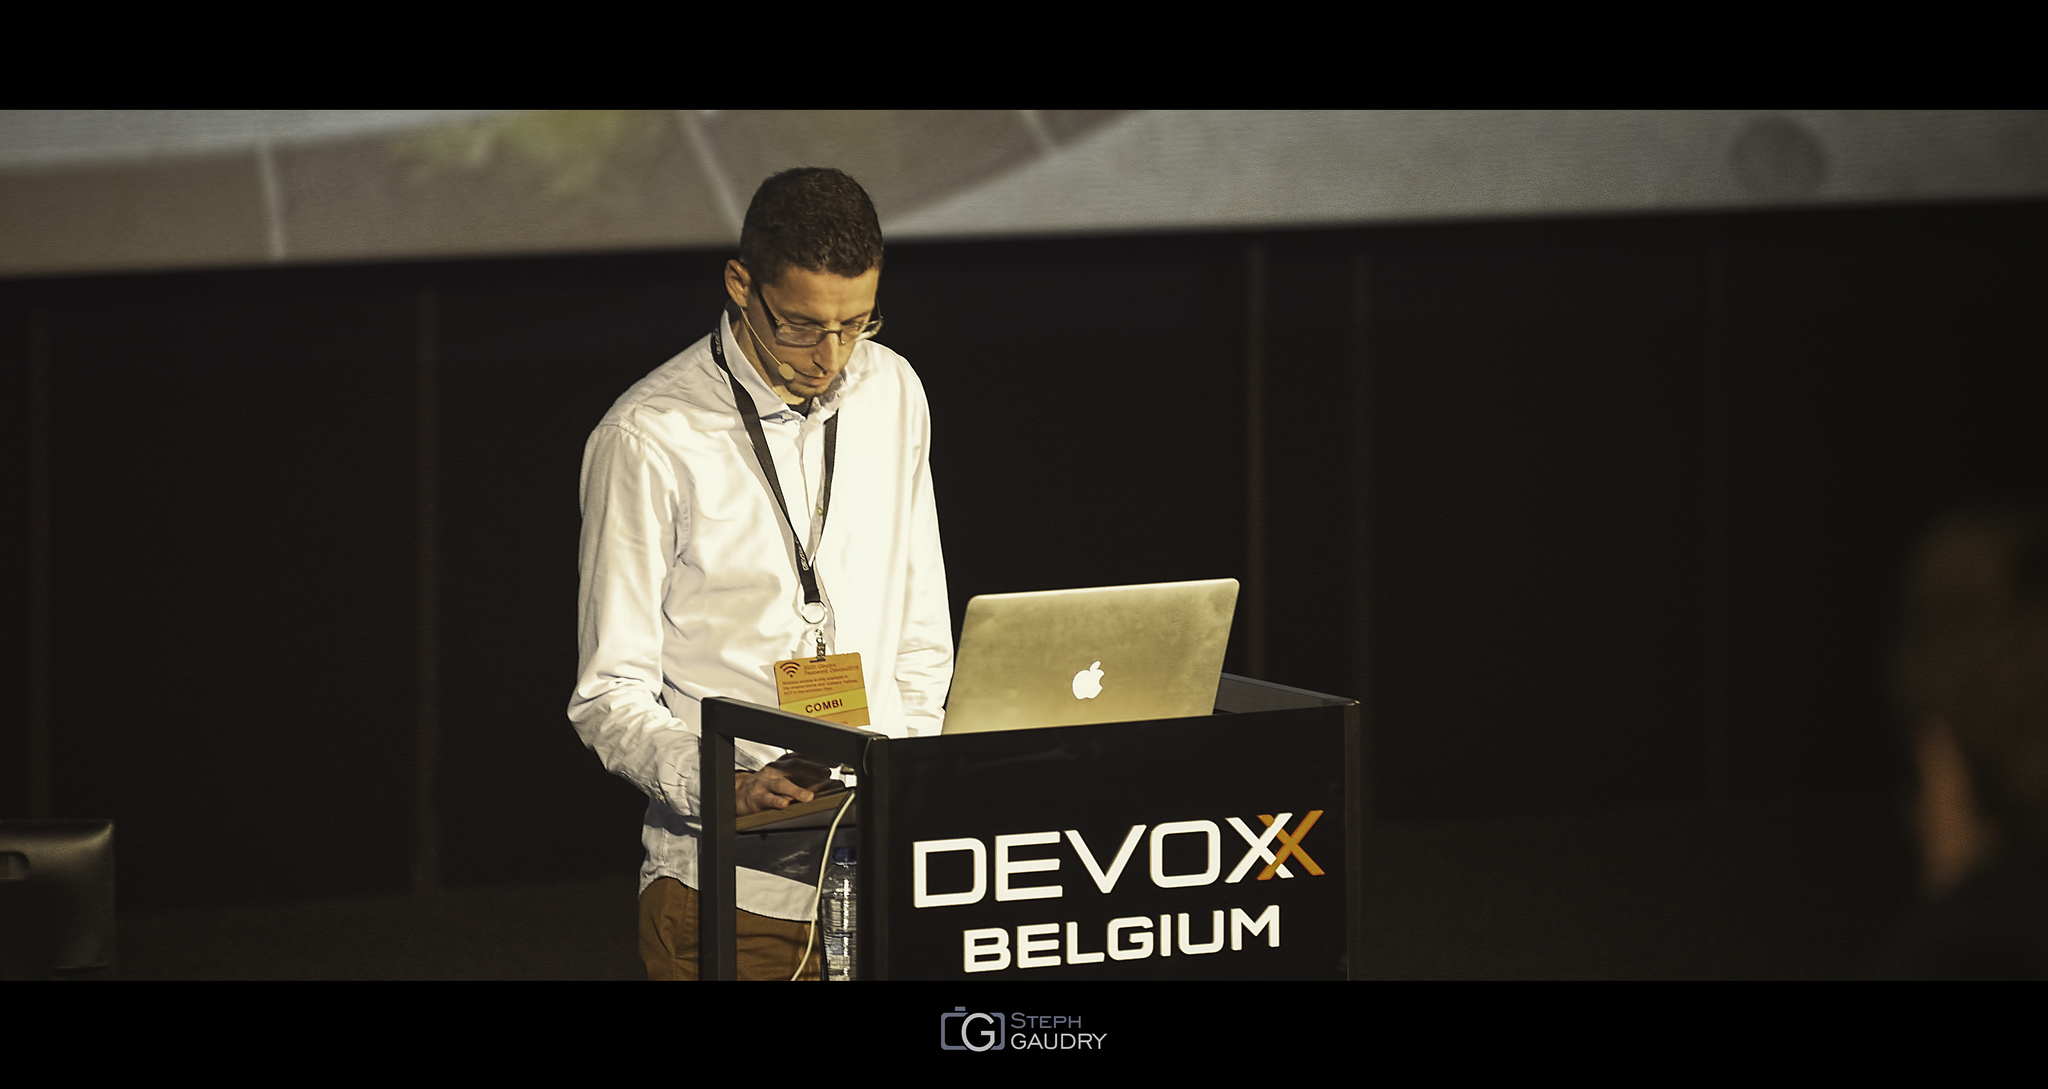 Tom Vleminckx @ Devoxx2015 - JMH [Click to start slideshow]